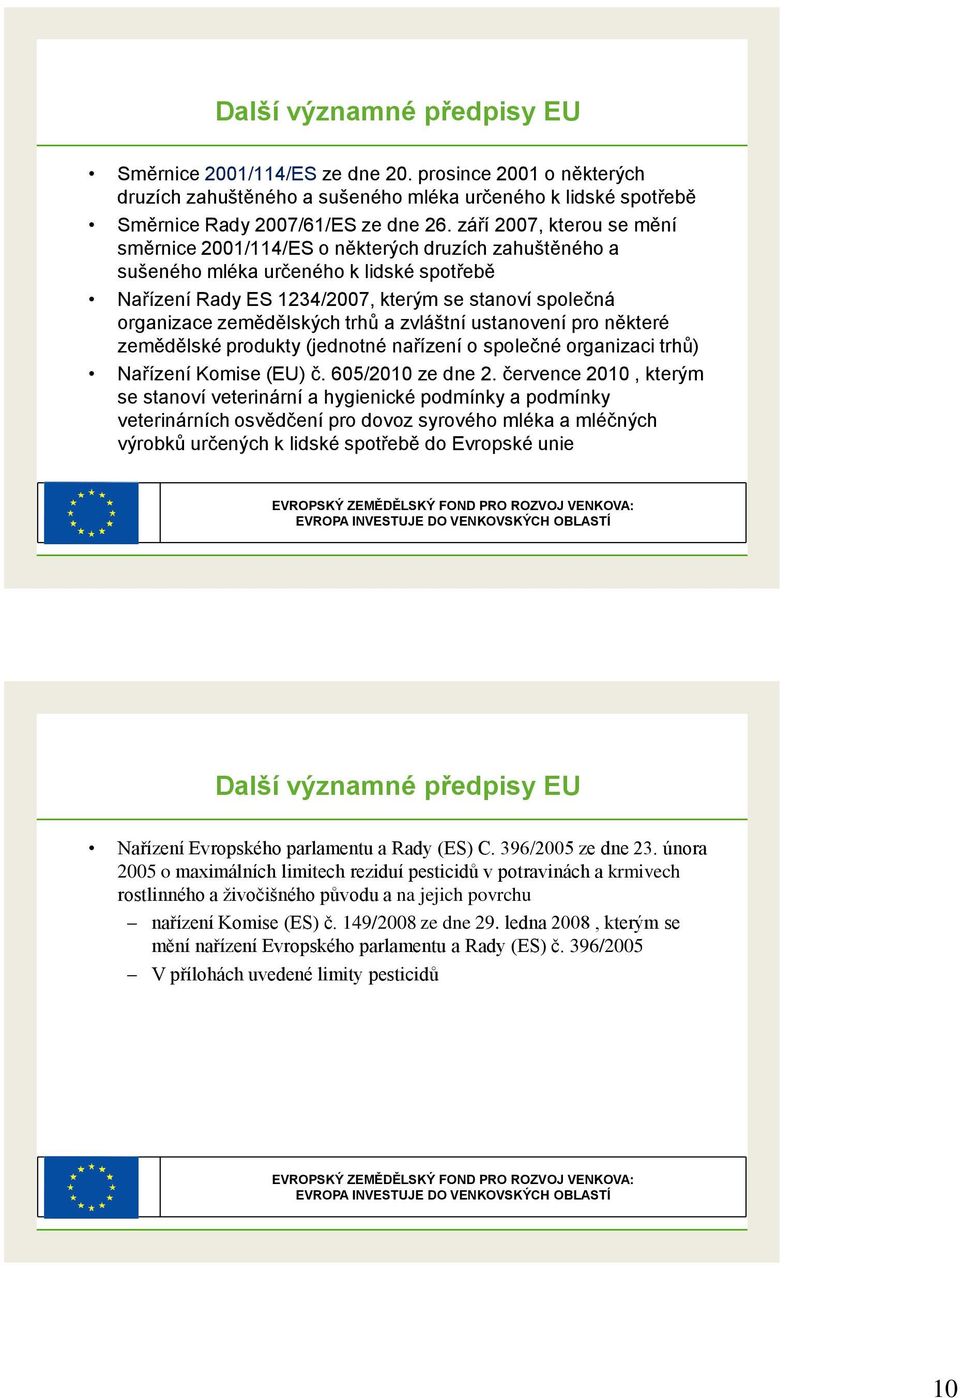 zemědělských trhů a zvláštní ustanovení pro některé zemědělské produkty (jednotné nařízení o společné organizaci trhů) Nařízení Komise (EU) č. 605/2010 ze dne 2.